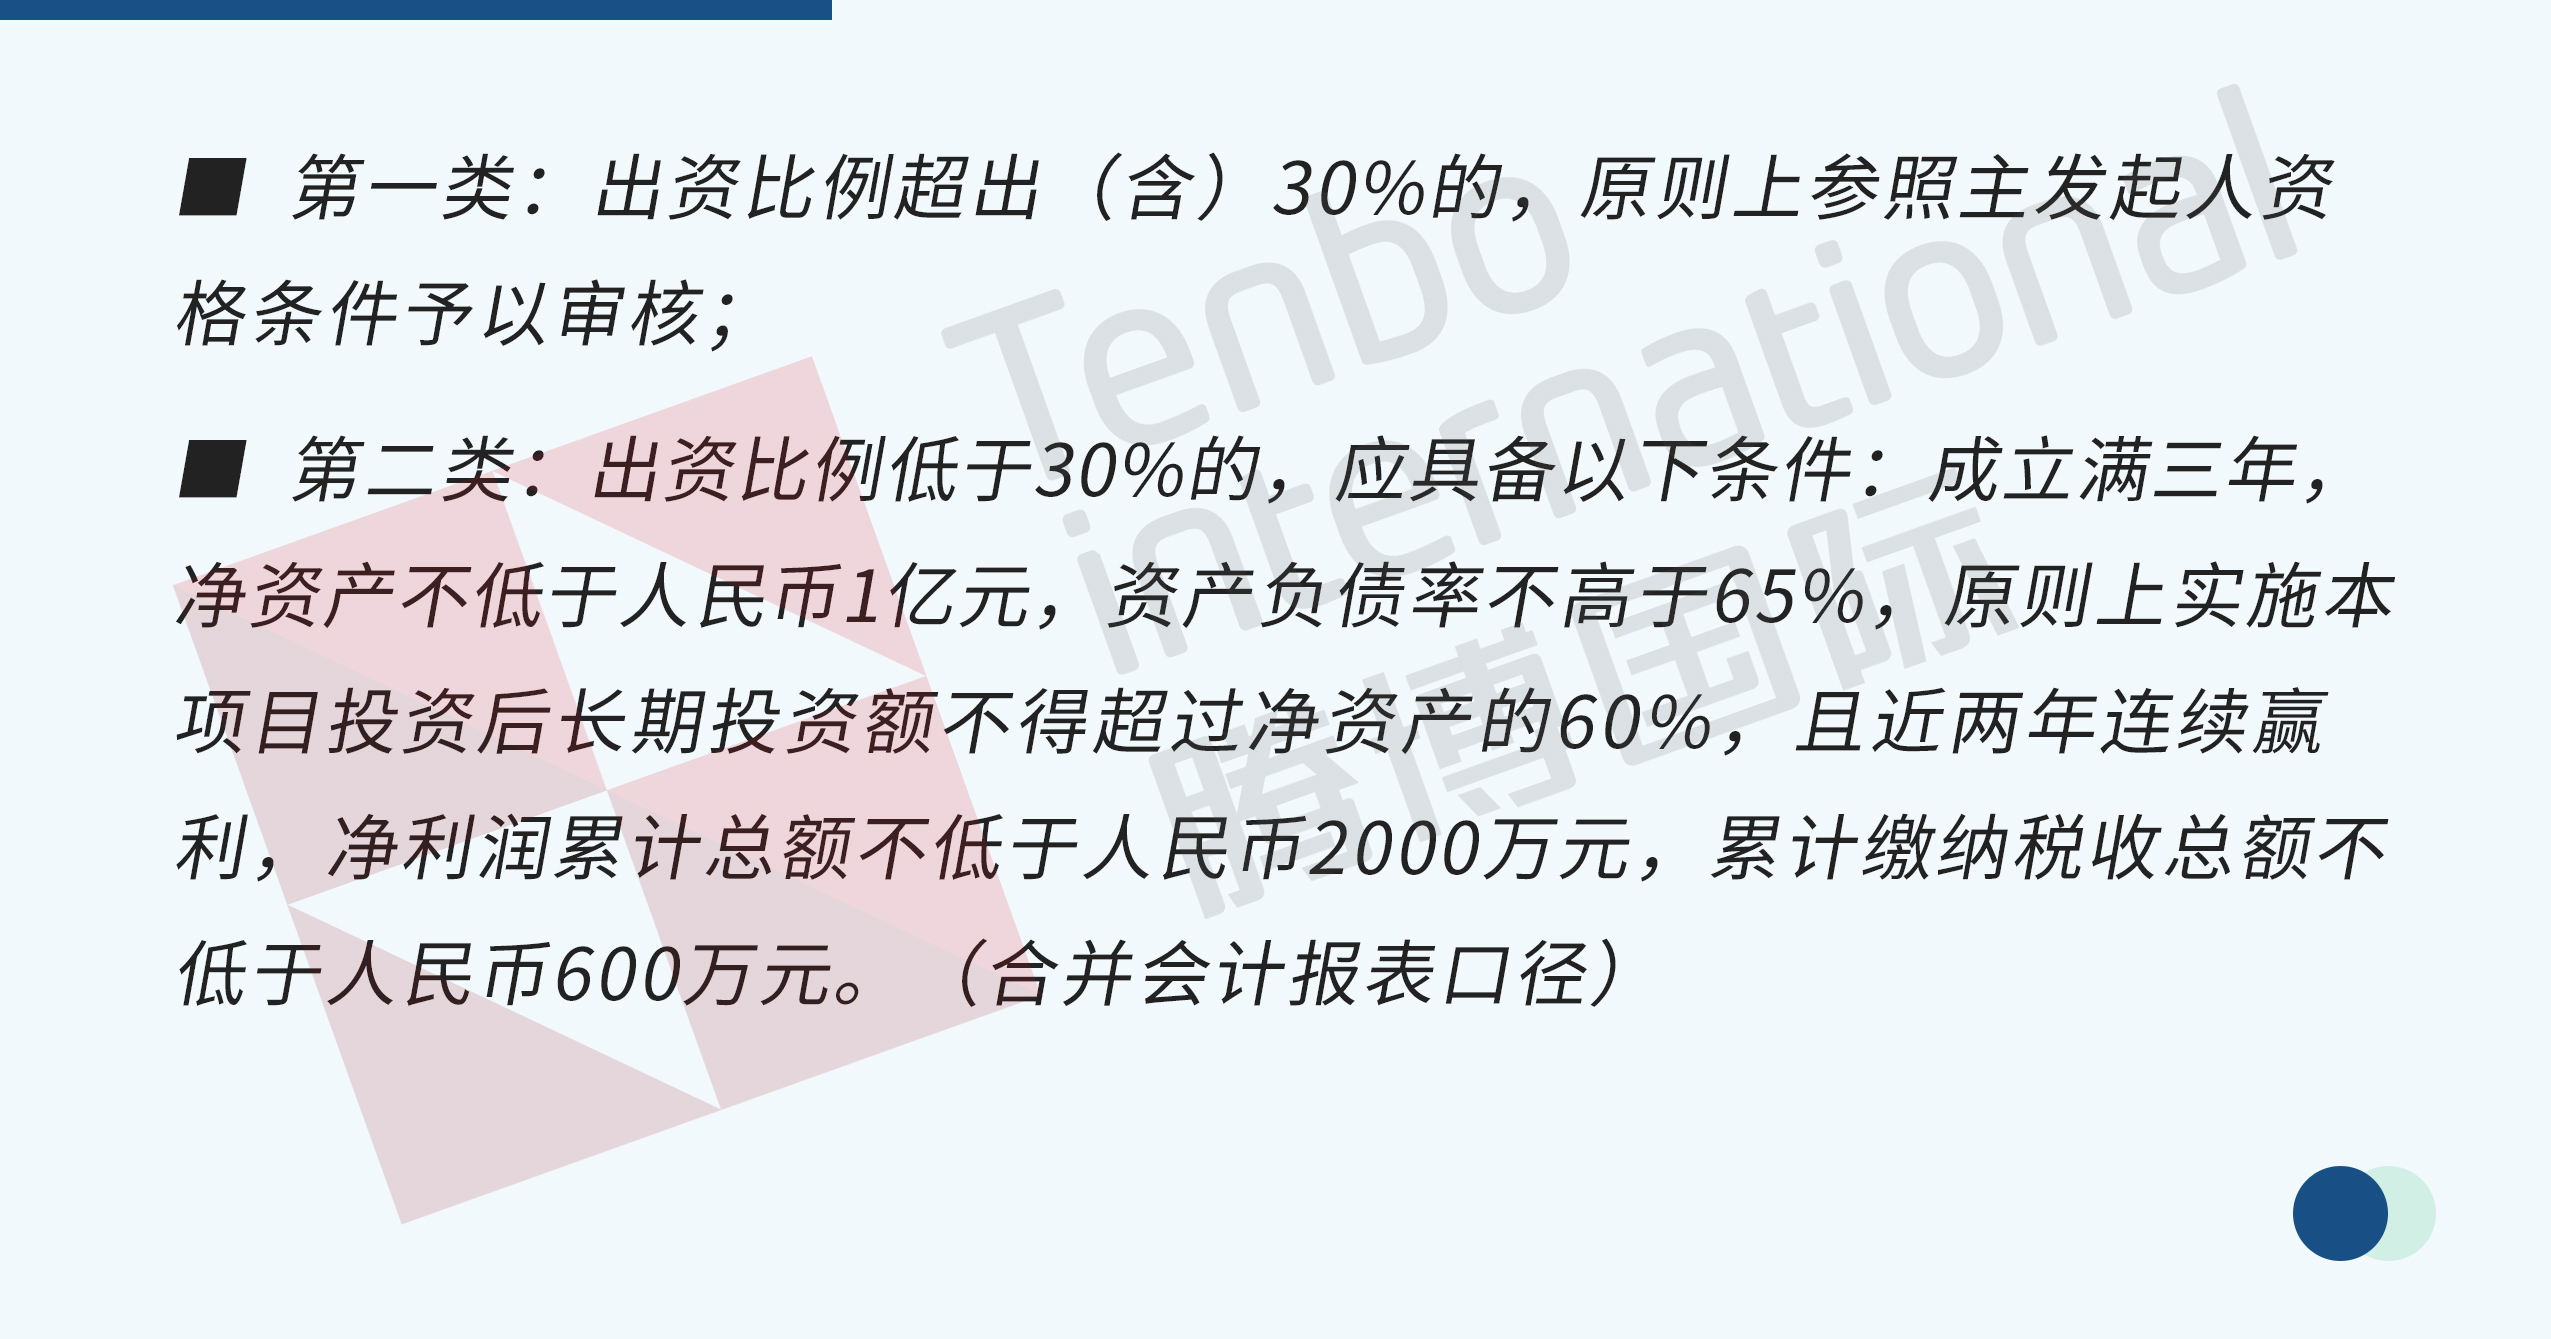 深圳小额贷款公司注册